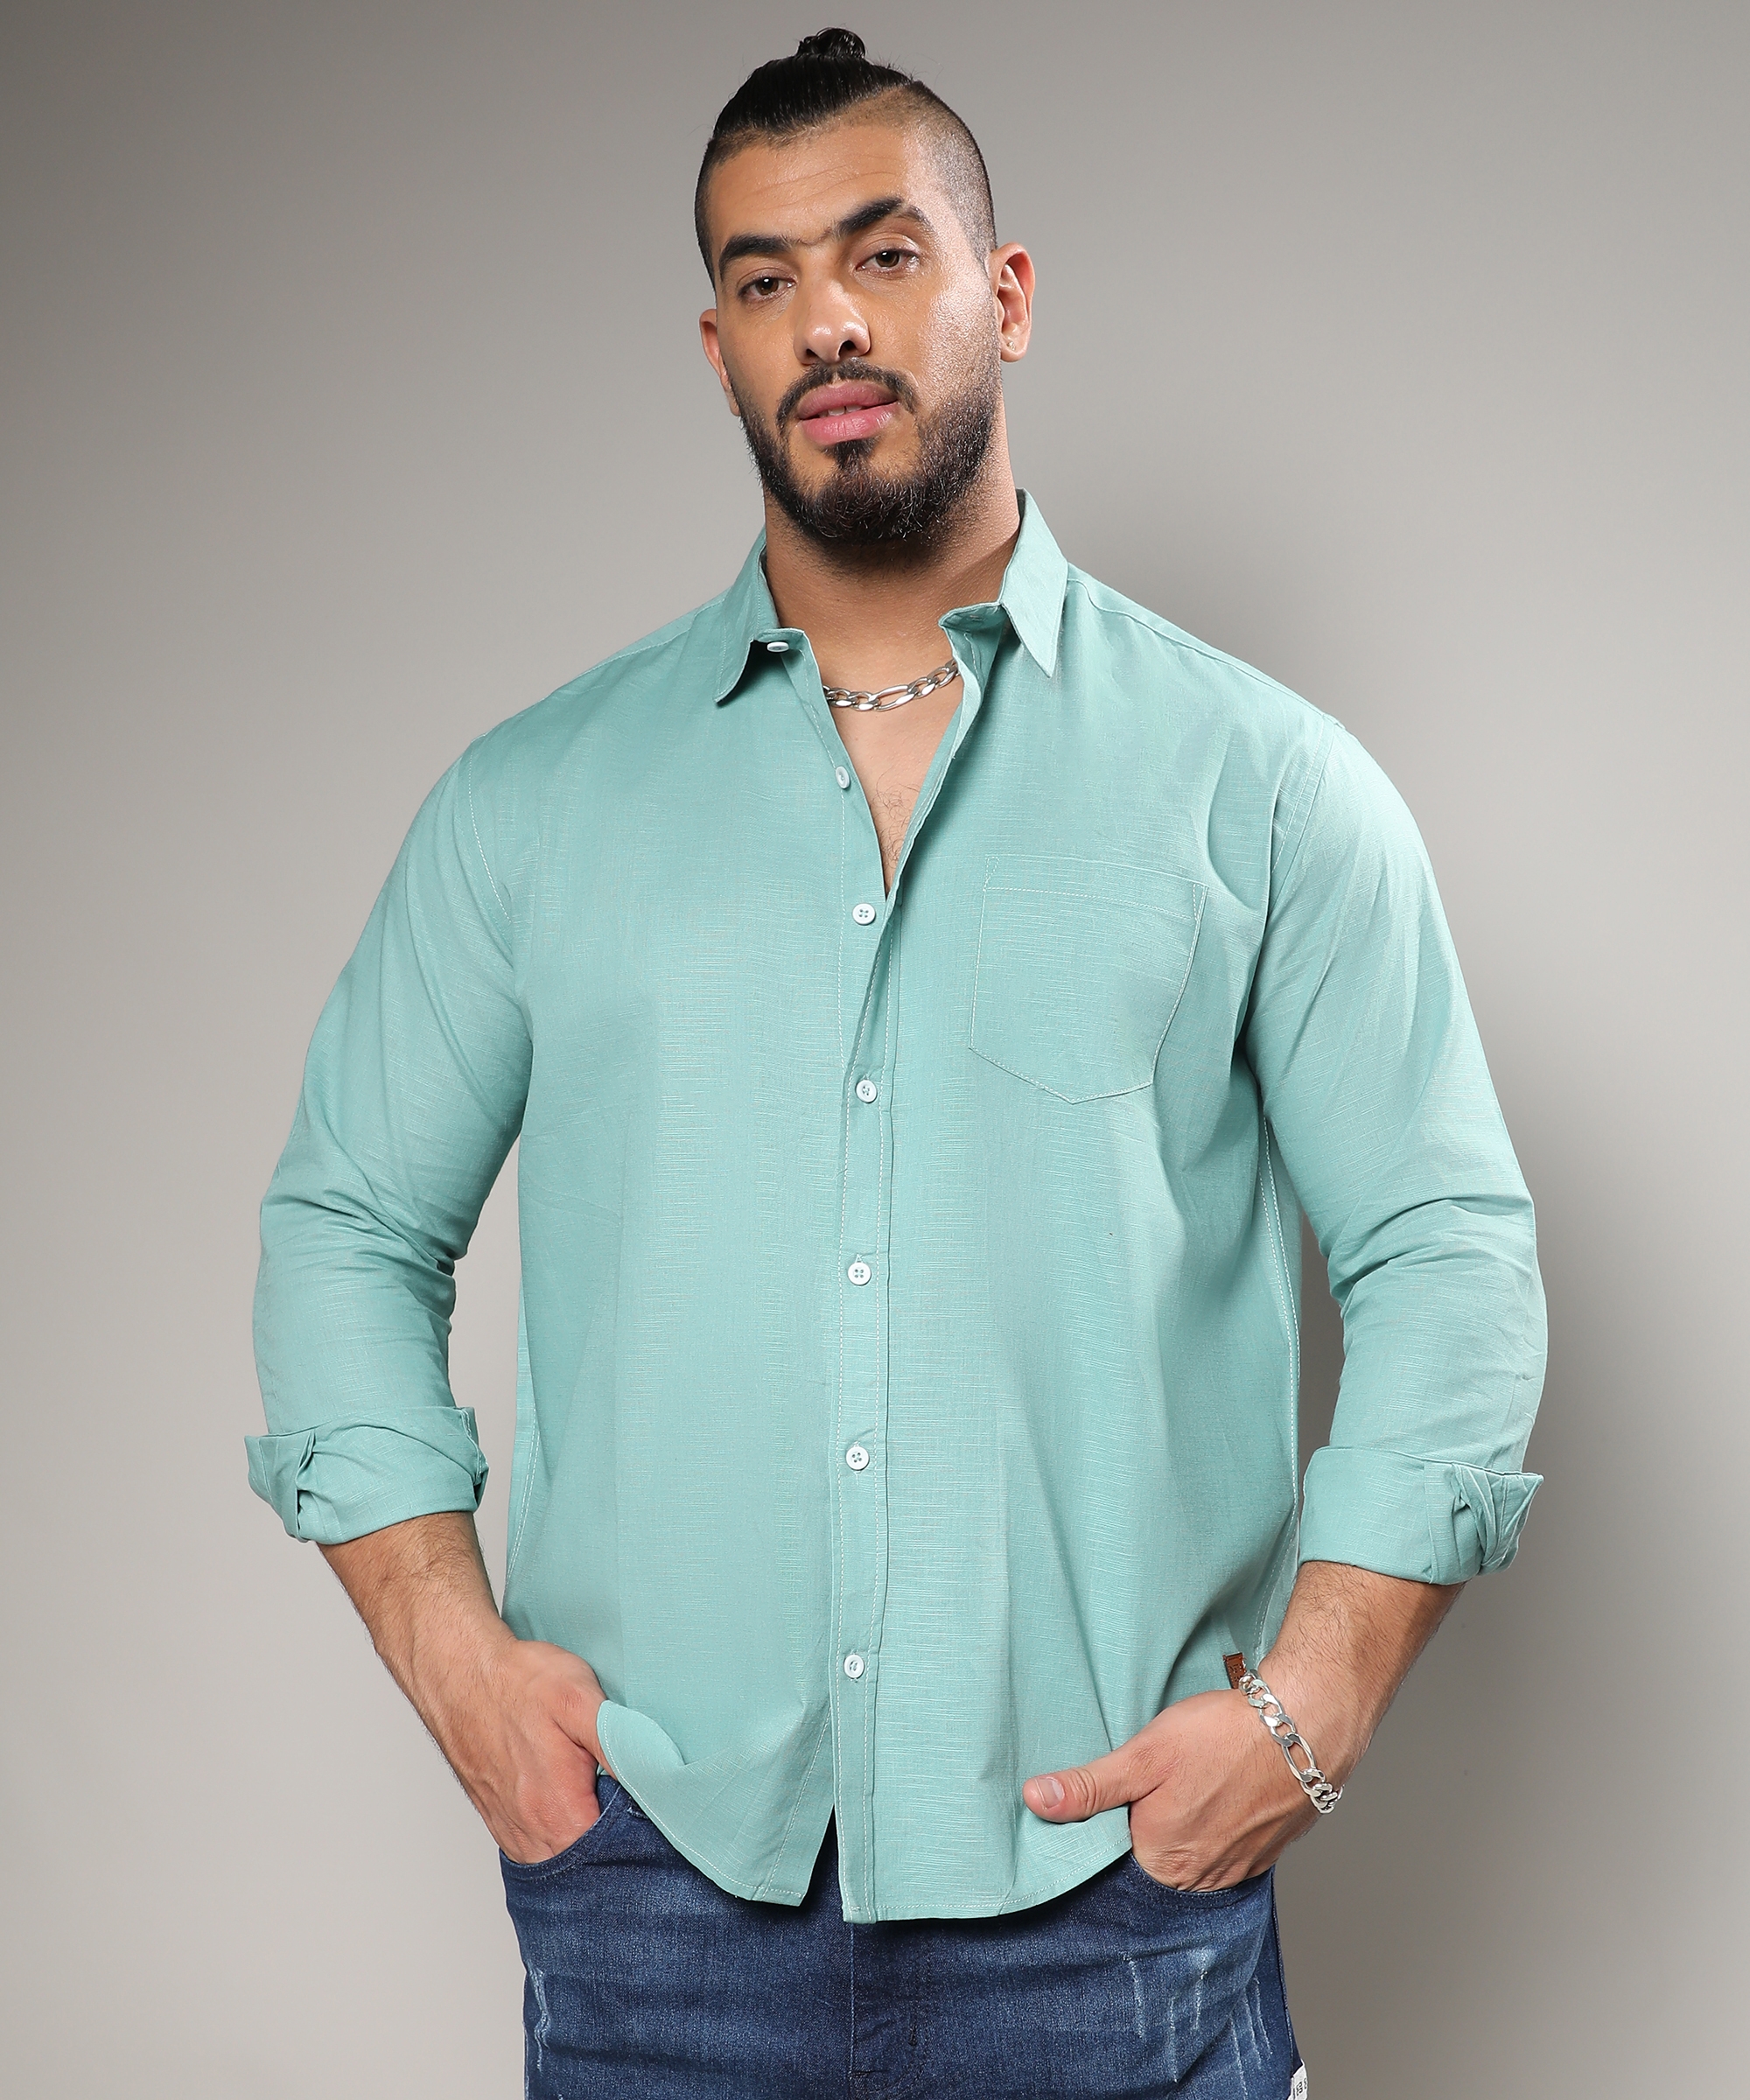 Men's Mint Green Basic Button-Up Shirt